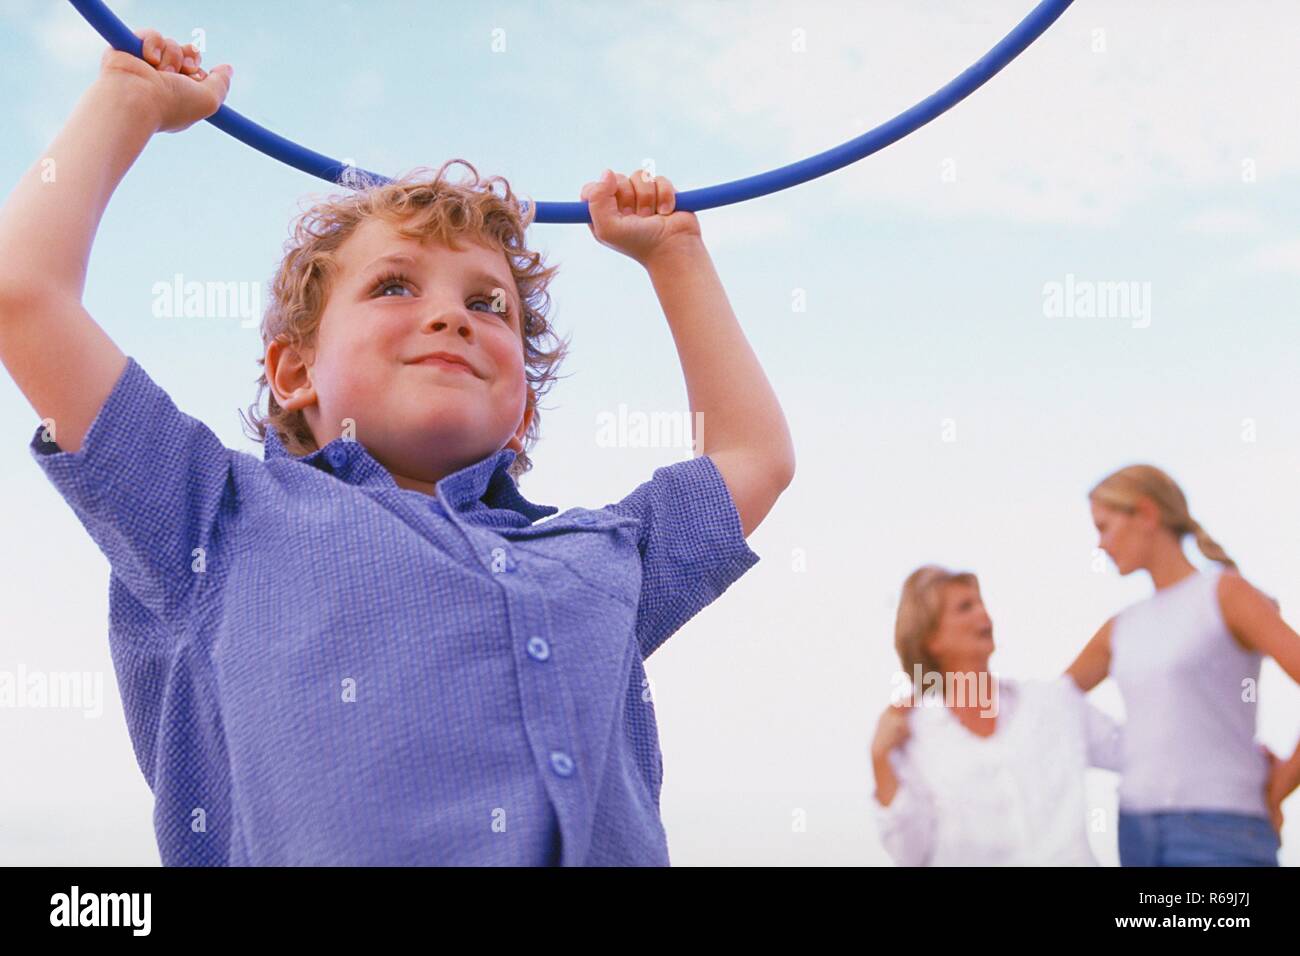 Strandszene, Portrait, Halbfigur, Junge, 5 Jahre, bekleidet mit blau-weiss kariertem Hemd, spielt mit einem blauen Gymnastik Reifen am Strand Stock Photo